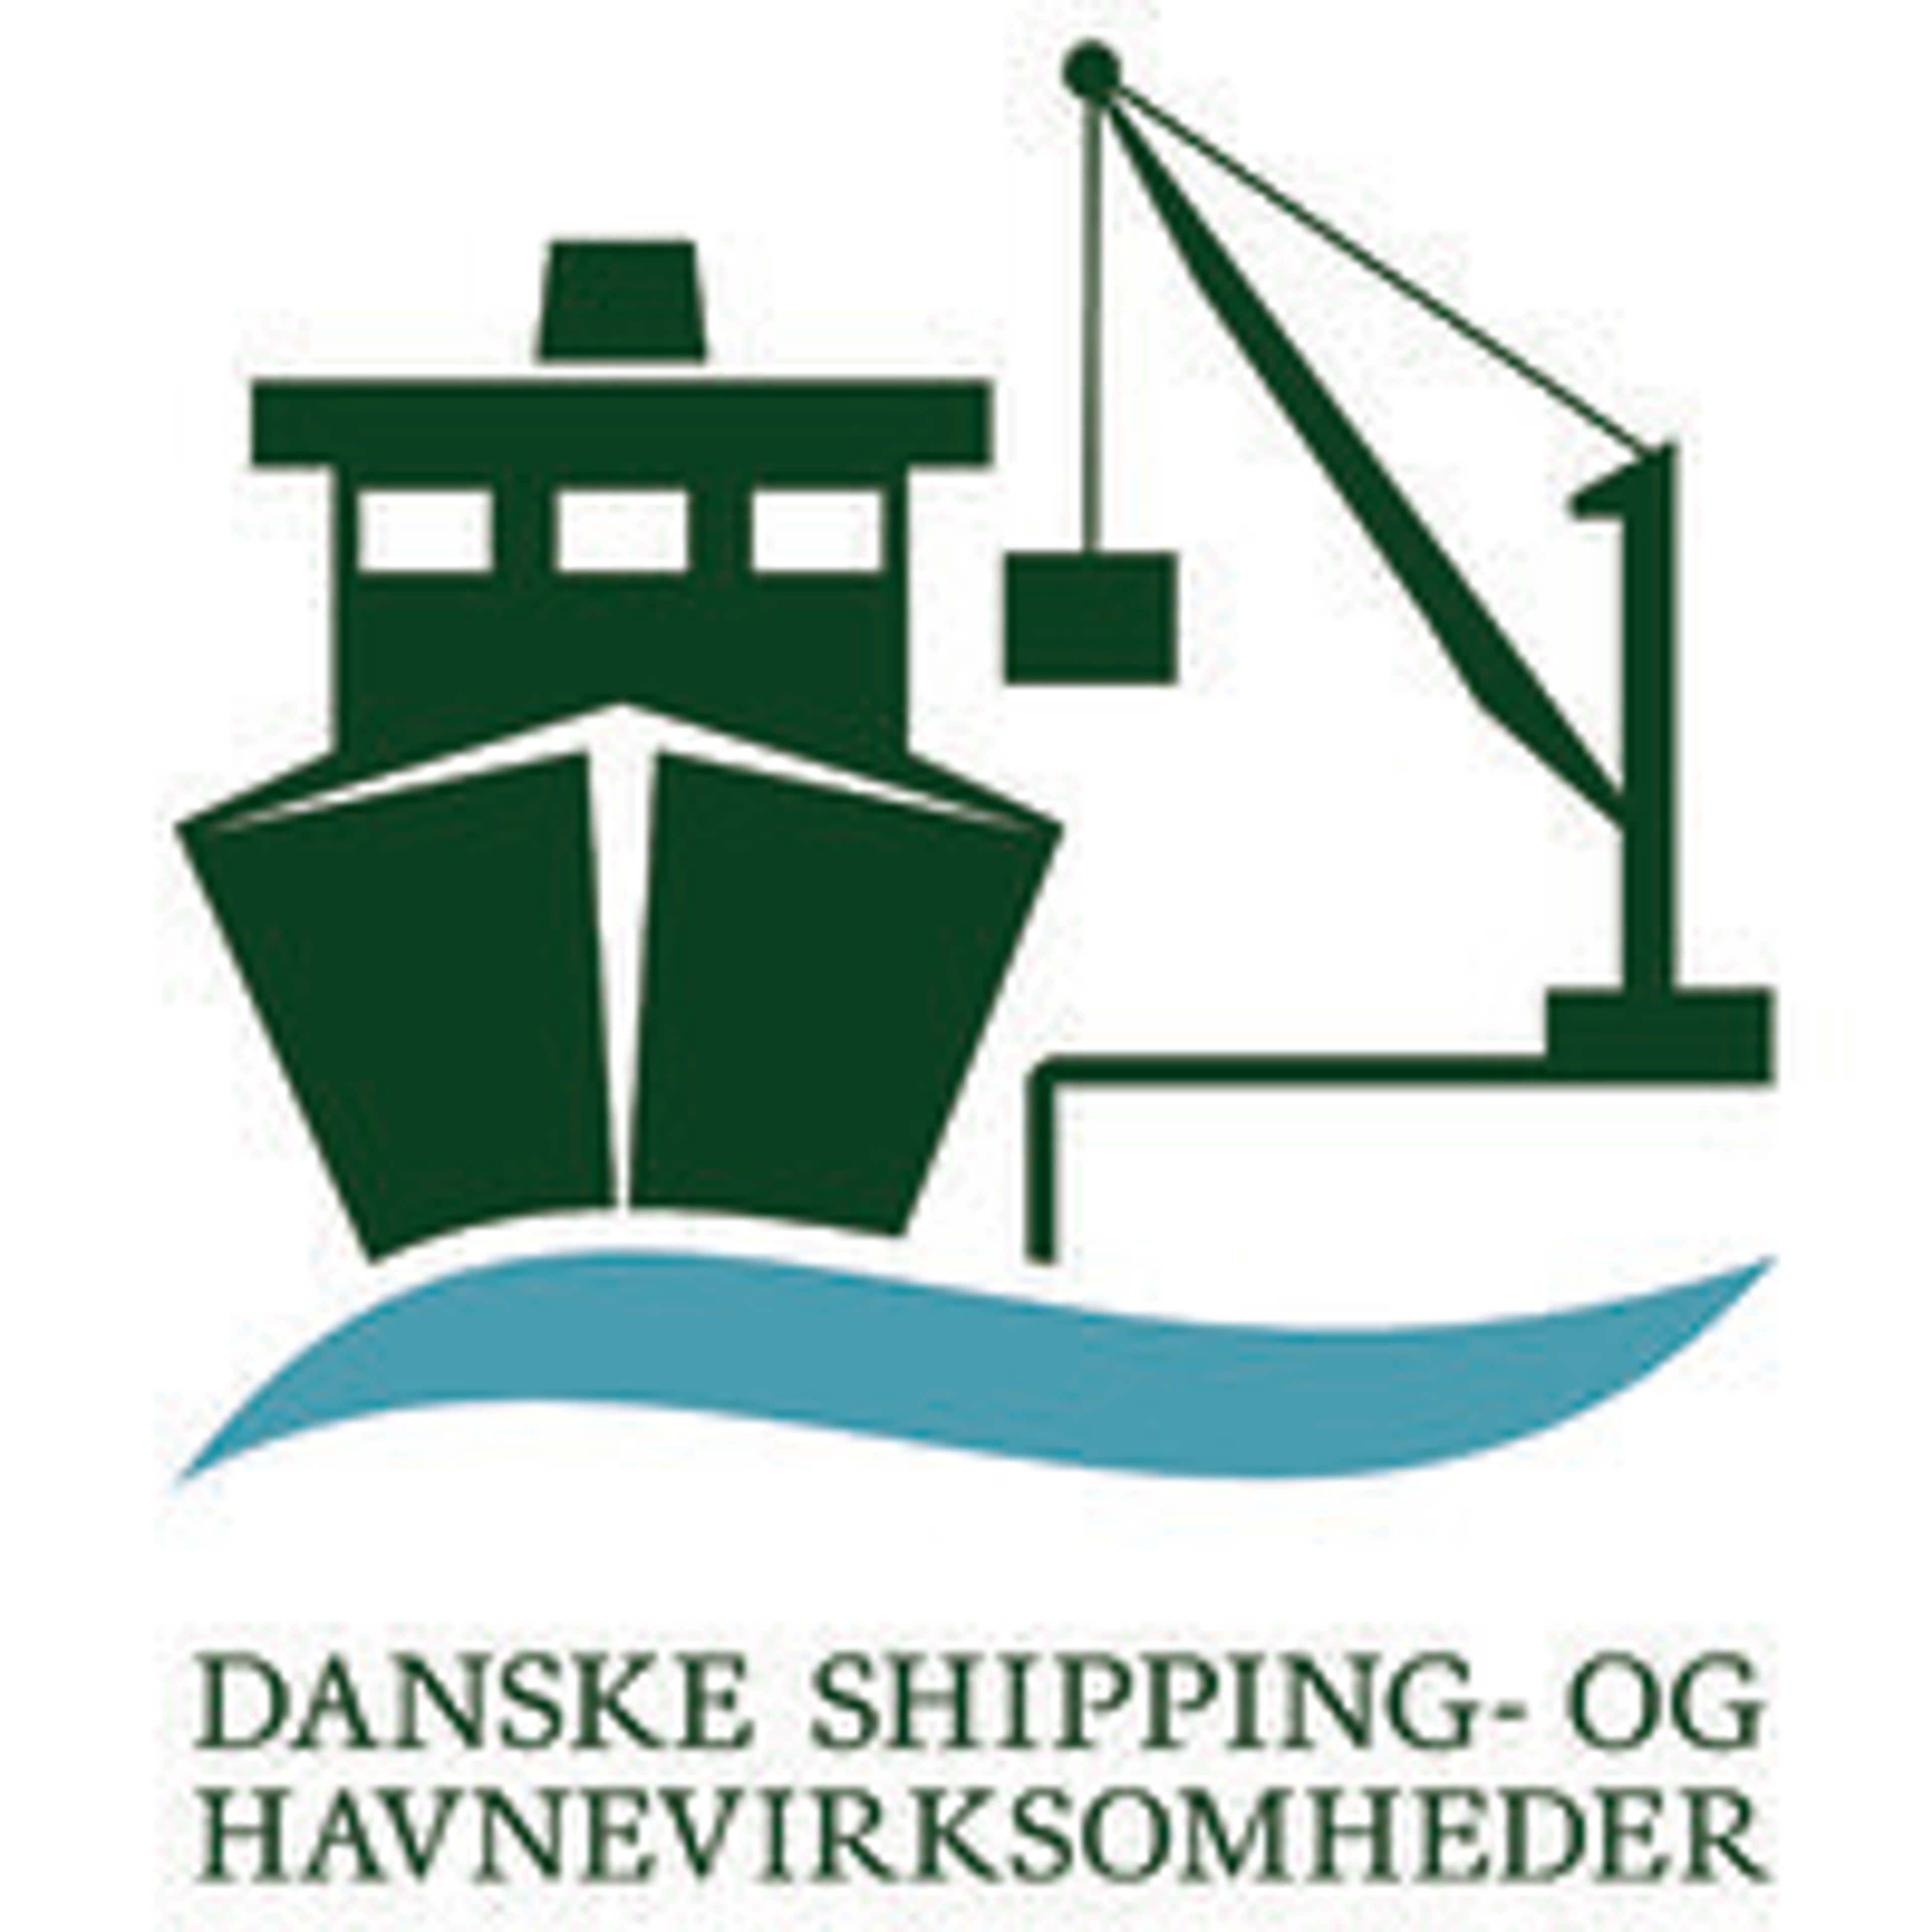 DSHV logo